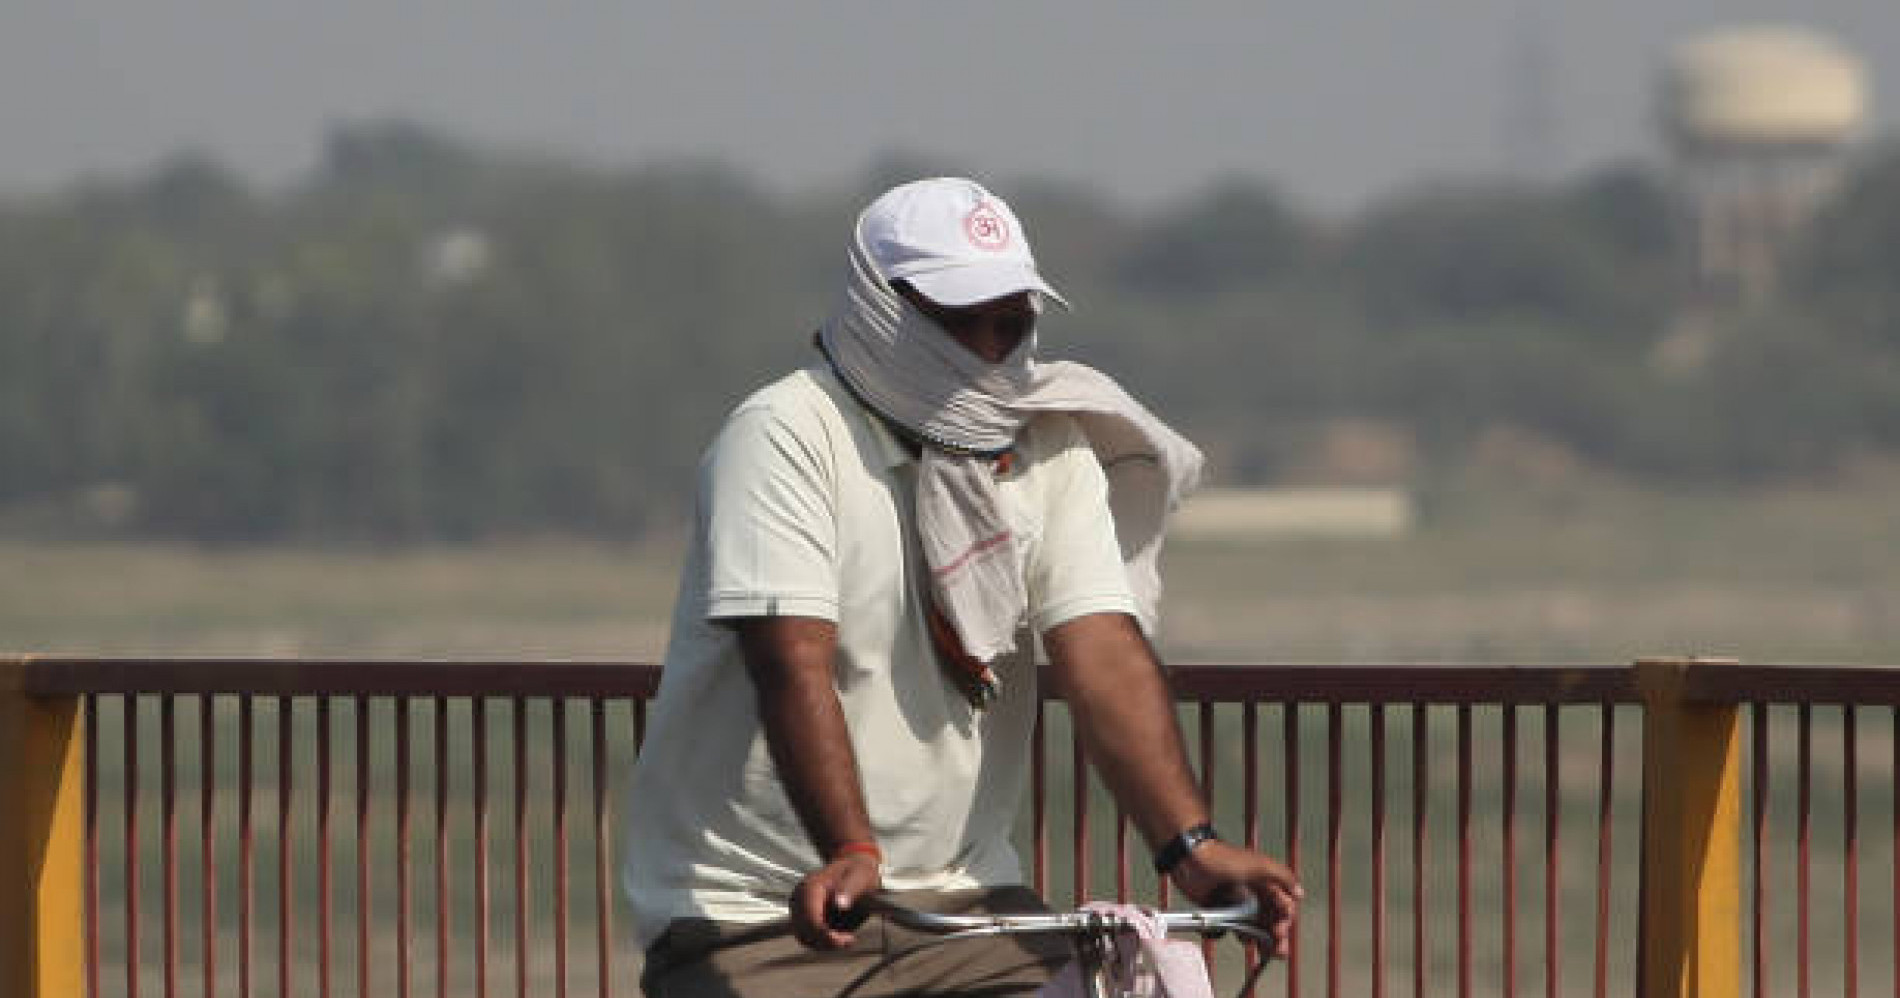 Cuaca panas ekstrem melanda India dengan suhu lebih dari 50 derajat (Sumber gambar: iStockphoto/anil_shakya19)